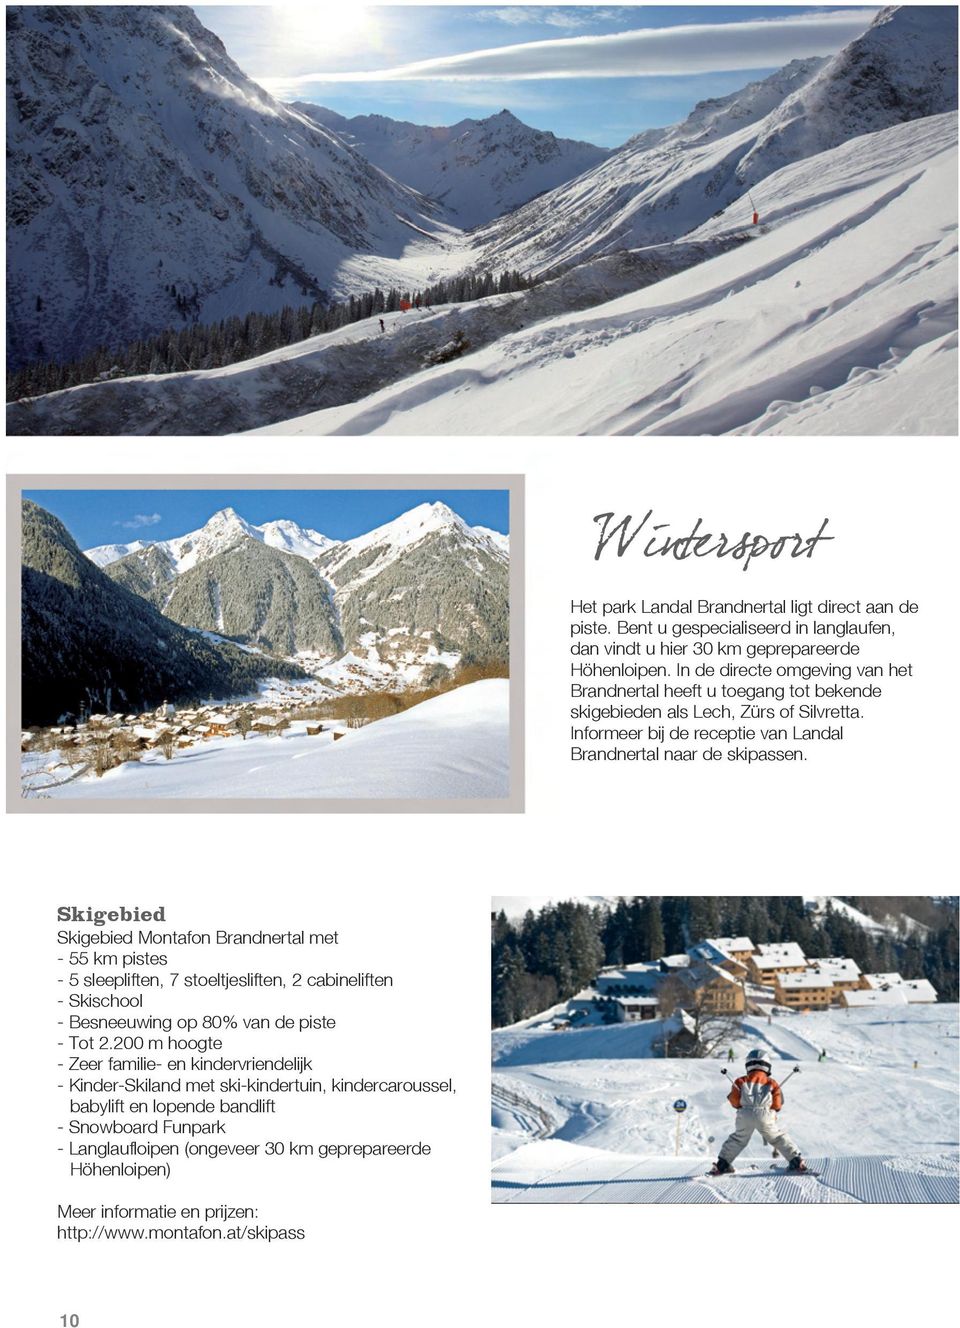 Skigebied Skigebied Montafon Brandnertal met - 55 km pistes - 5 sleepliften, 7 stoeltjesliften, 2 cabineliften - Skischool - Besneeuwing op 80% van de piste - Tot 2.